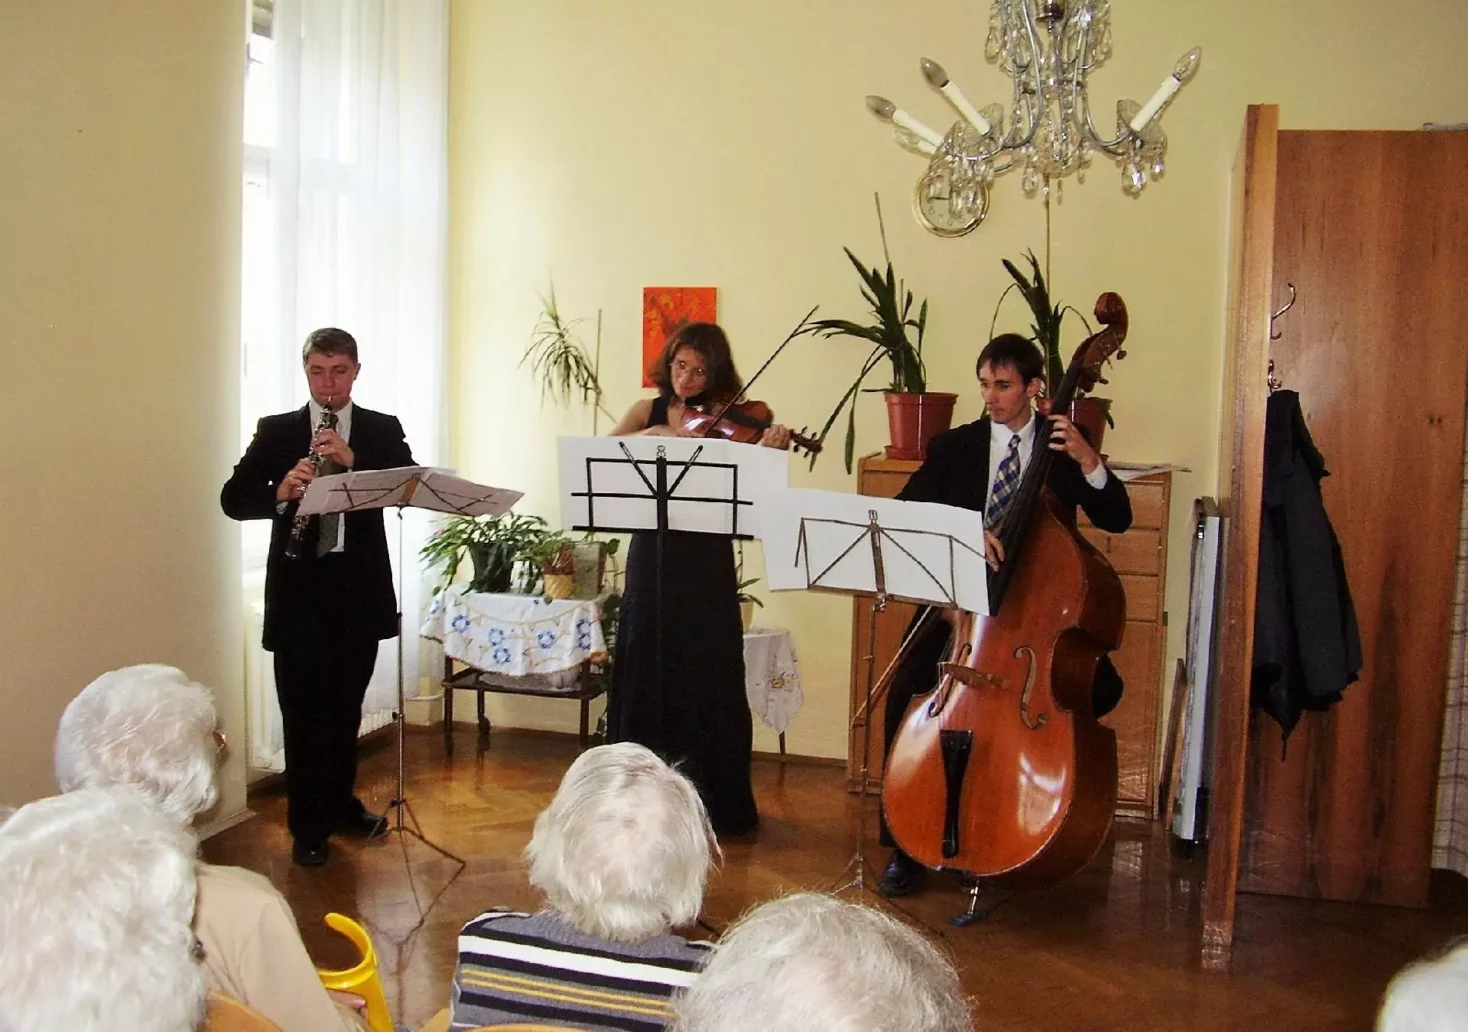 Musikprogramm sorgt für Unterhaltung in Grazer Pflegeheimen